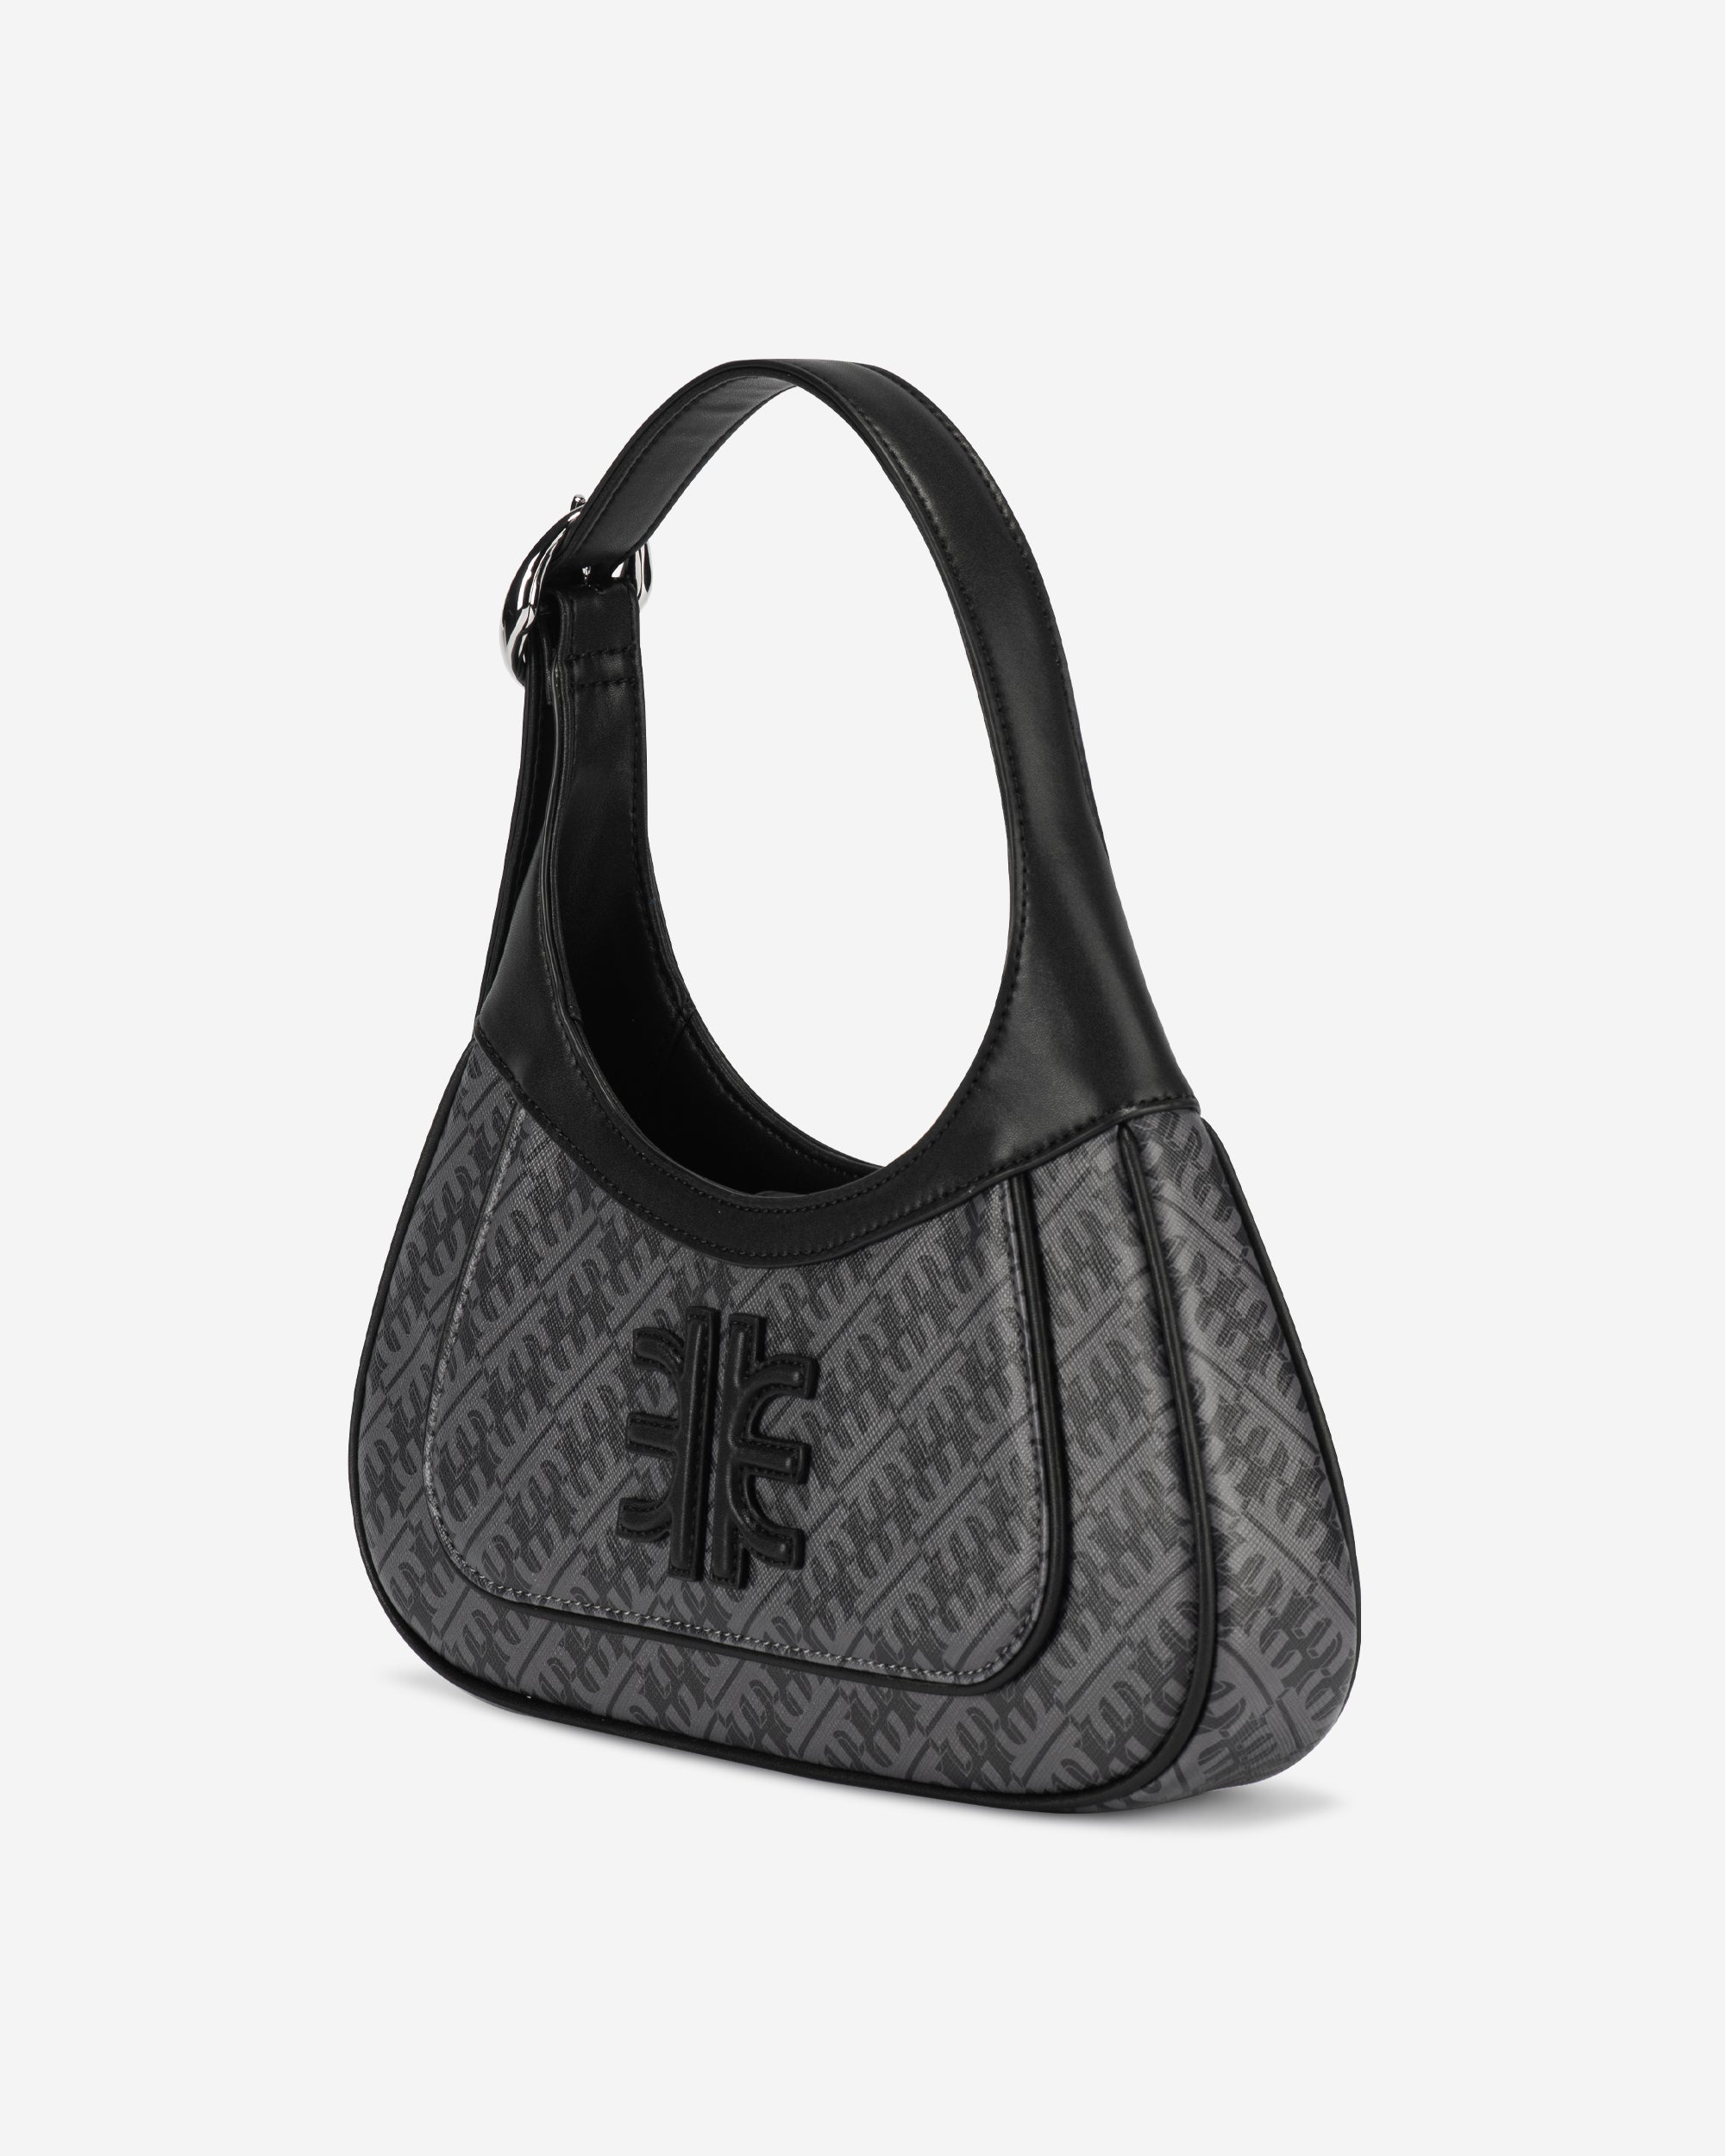 FEI Hobo Bag - Iron Black